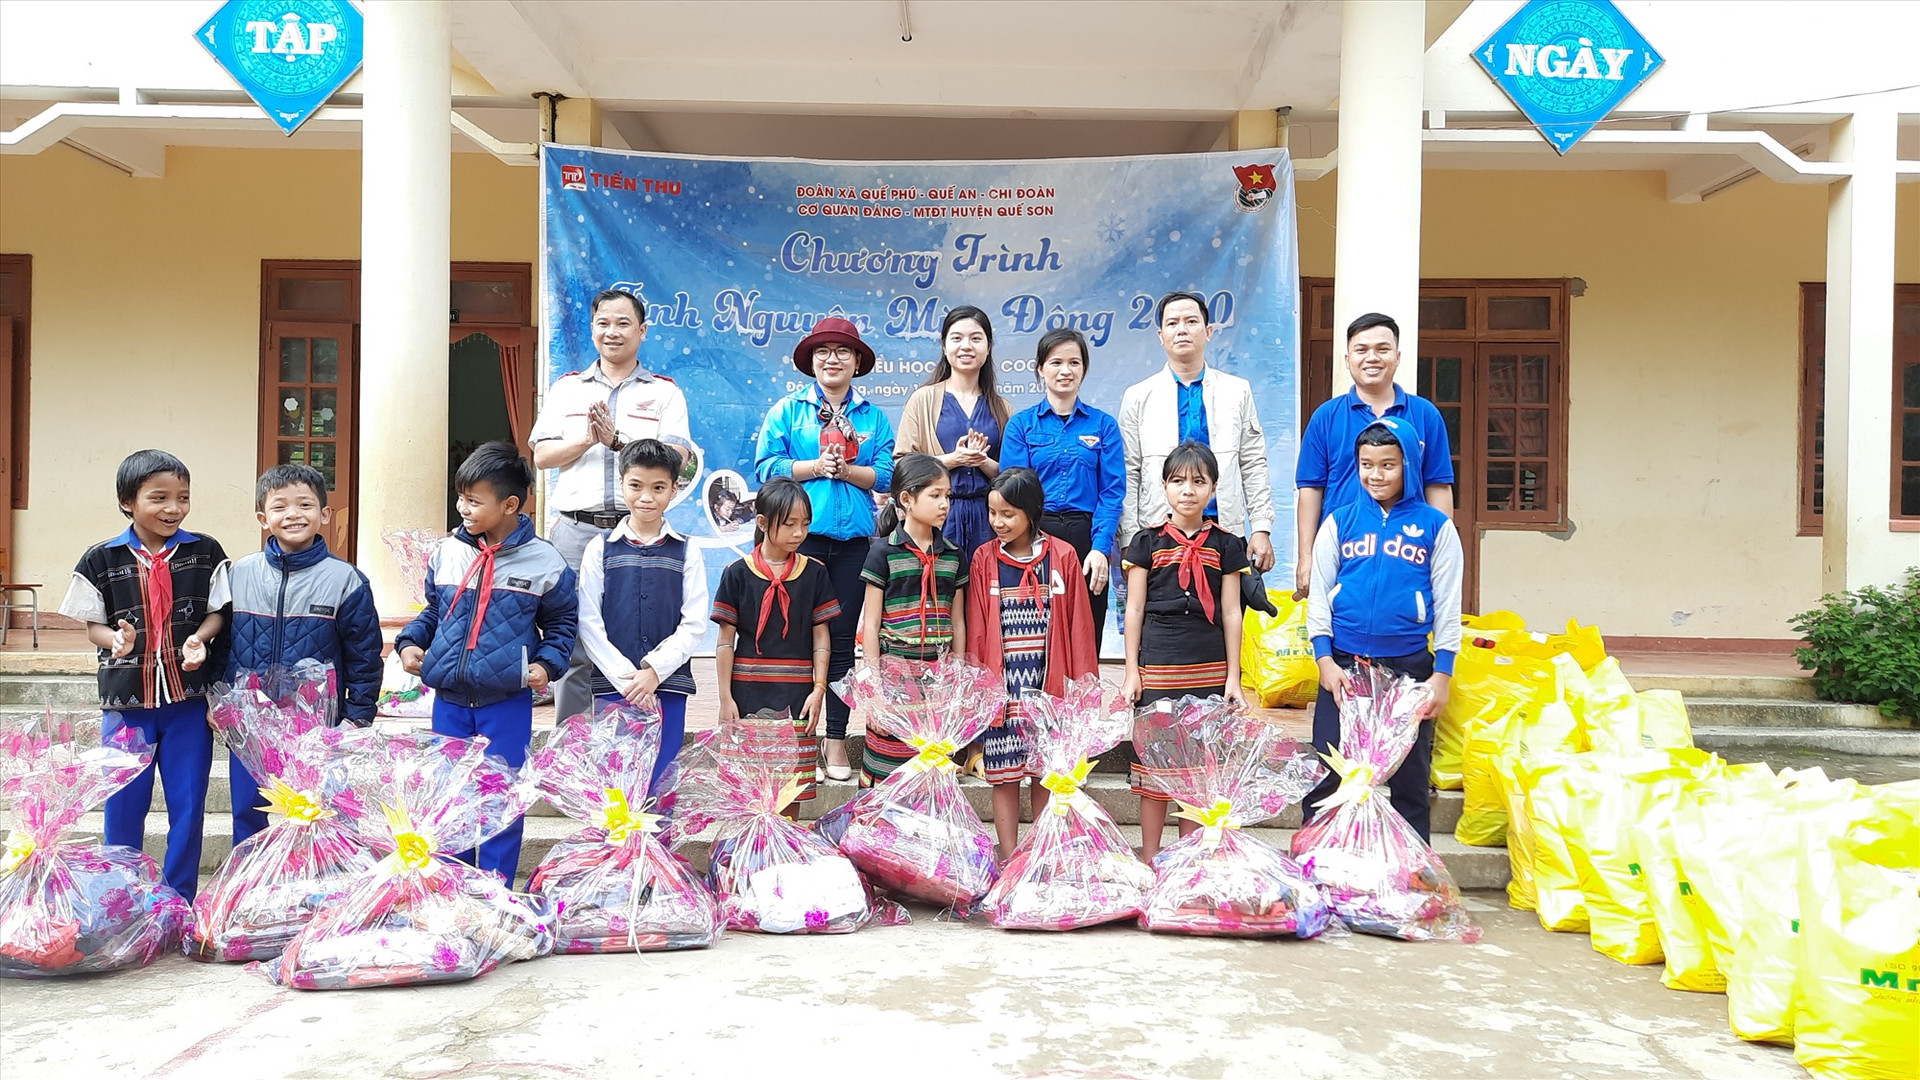 Hơn 200 phần quà được trao tặng cho các em học sinh xã Mà Cooih, Đông Giang. Ảnh: L.V